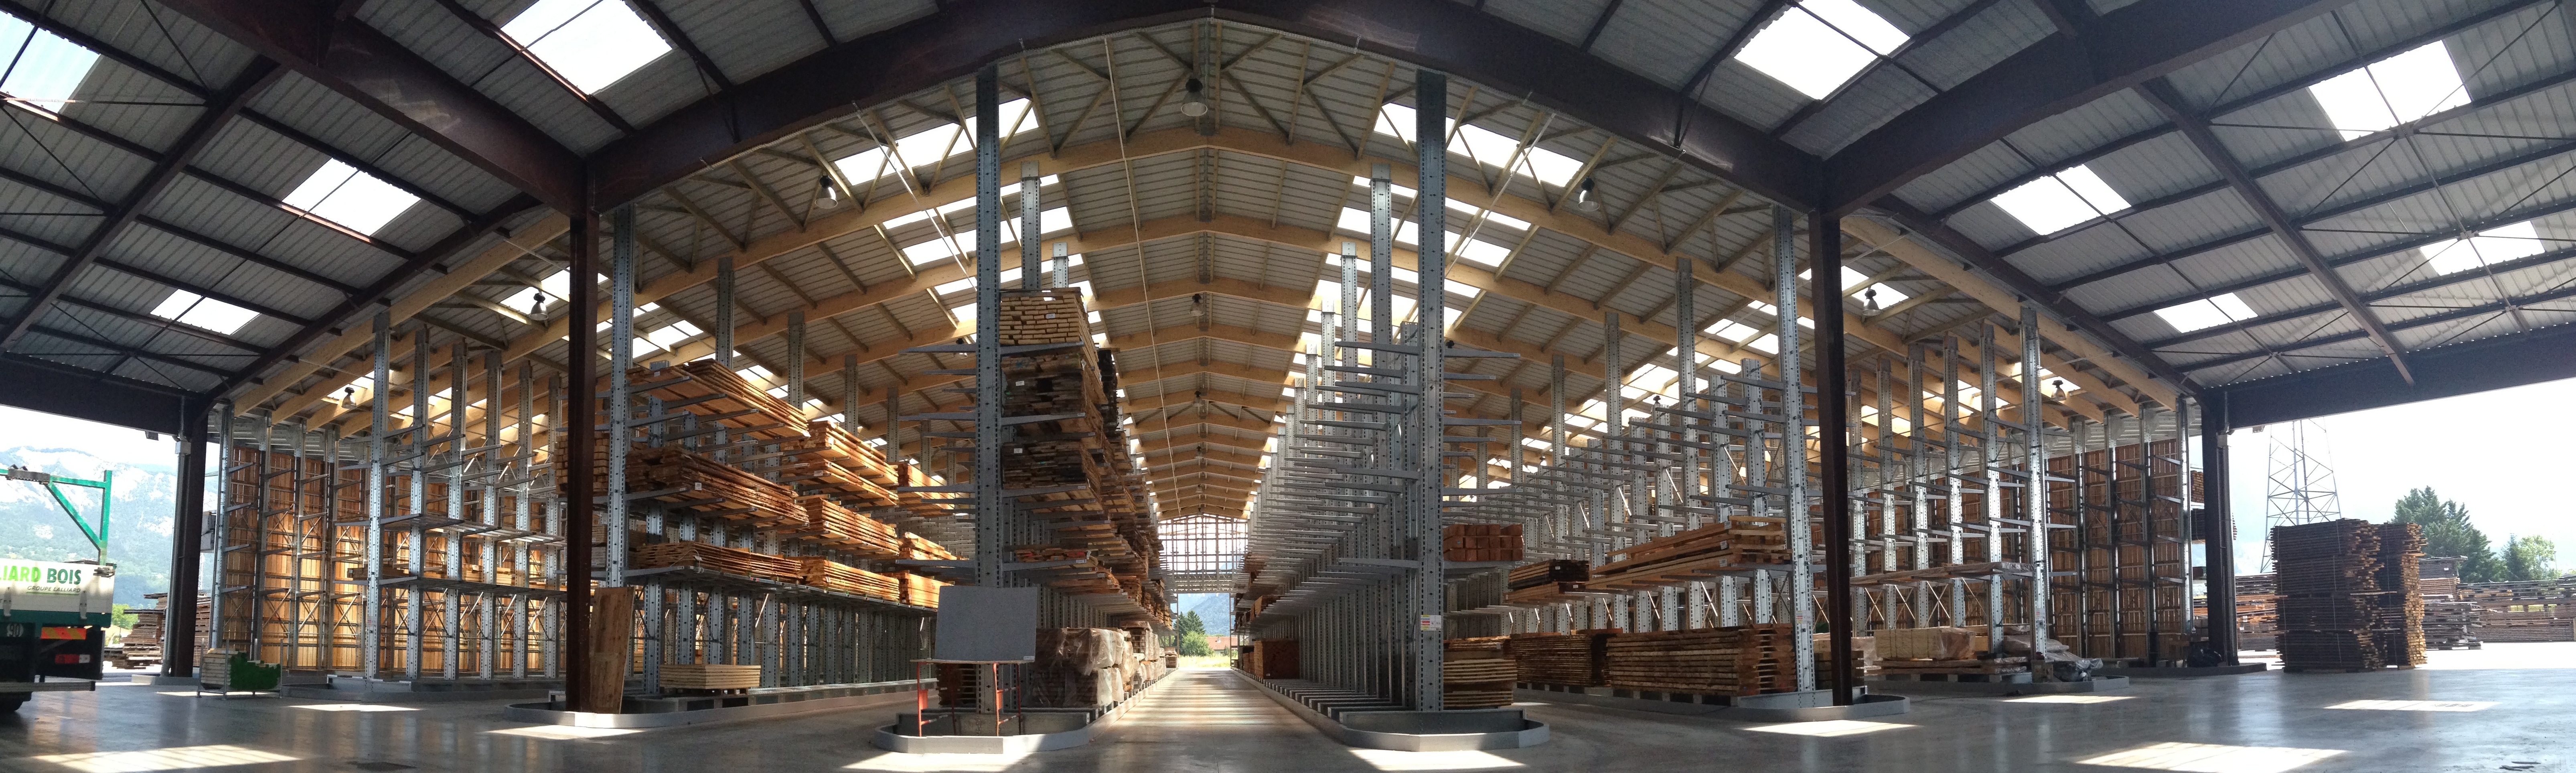 Vue panoramique d’un entrepôt de stockage construit à l’aide de racks cantilever
											